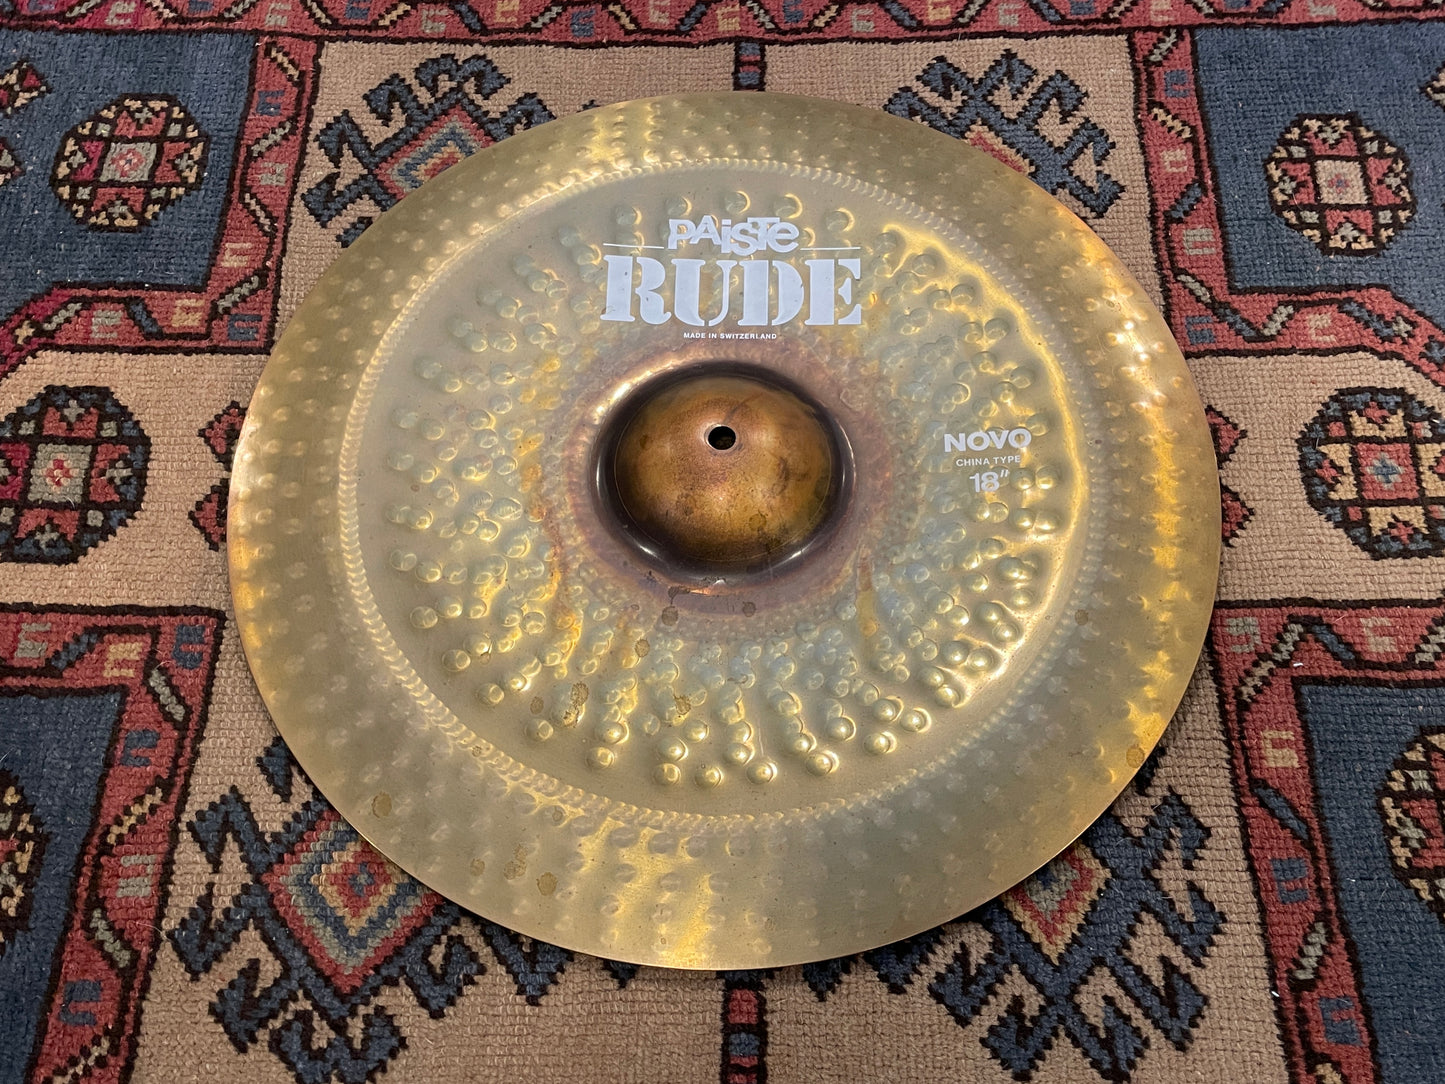 18" Paiste Rude Novo China Type Cymbal 1564g